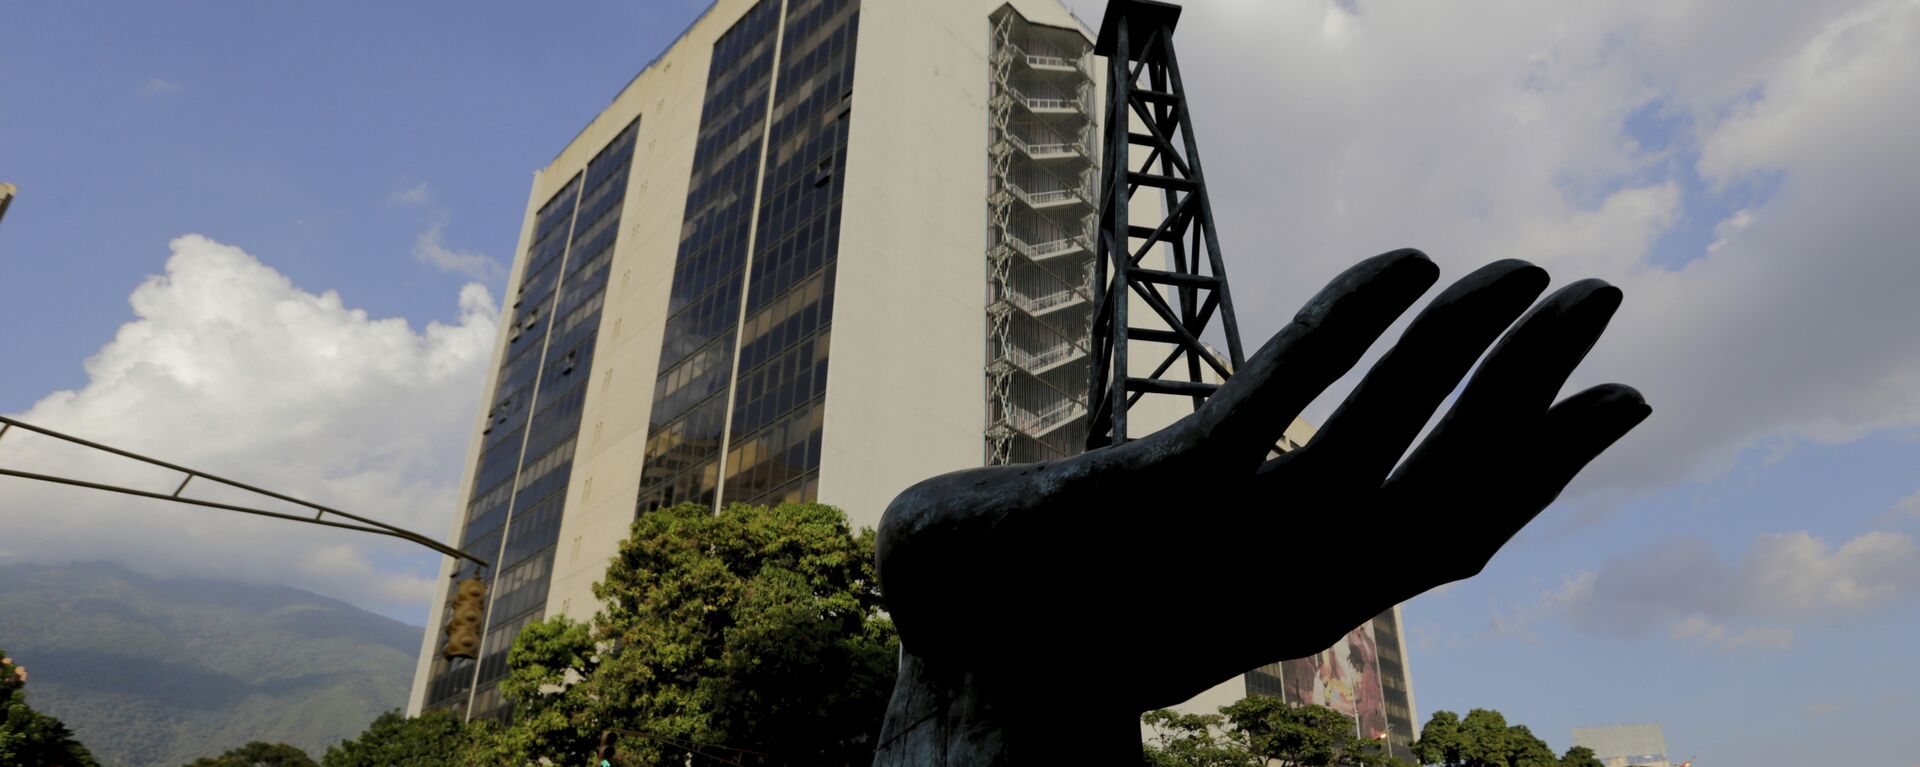 La esculptura de una bomba de gasóleo frente a la sede de la empresa venezolana PDVSA - Sputnik Mundo, 1920, 07.09.2021